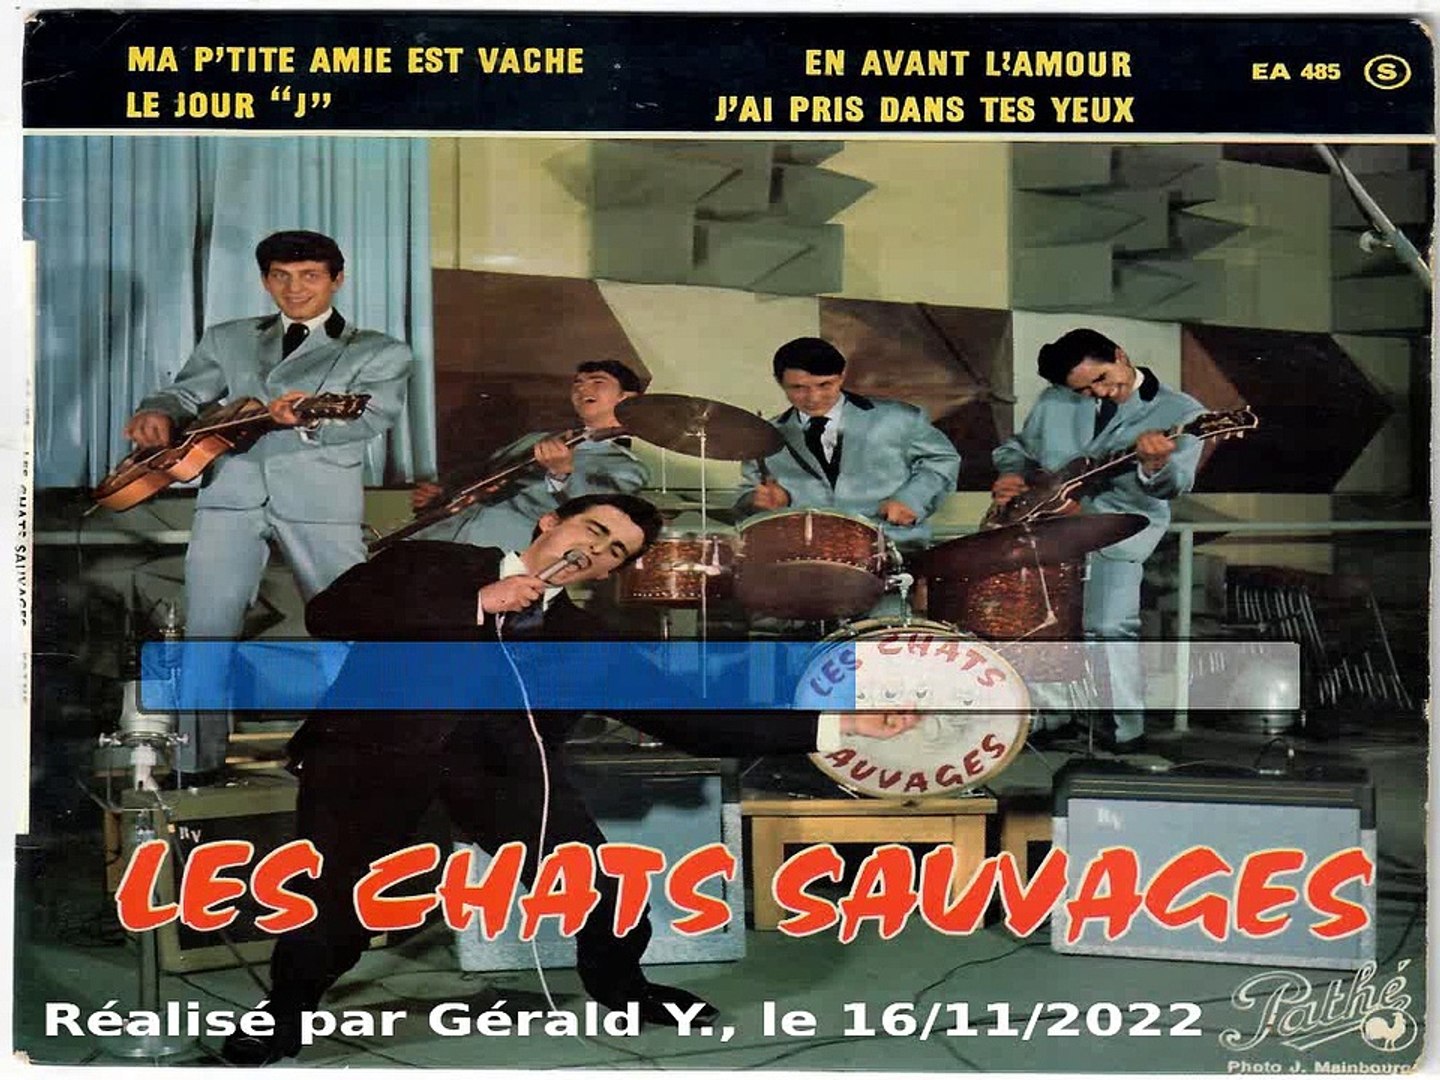 Les Chats Sauvages & Dick Rivers_J'ai pris dans tes yeux (1961) - Vidéo  Dailymotion